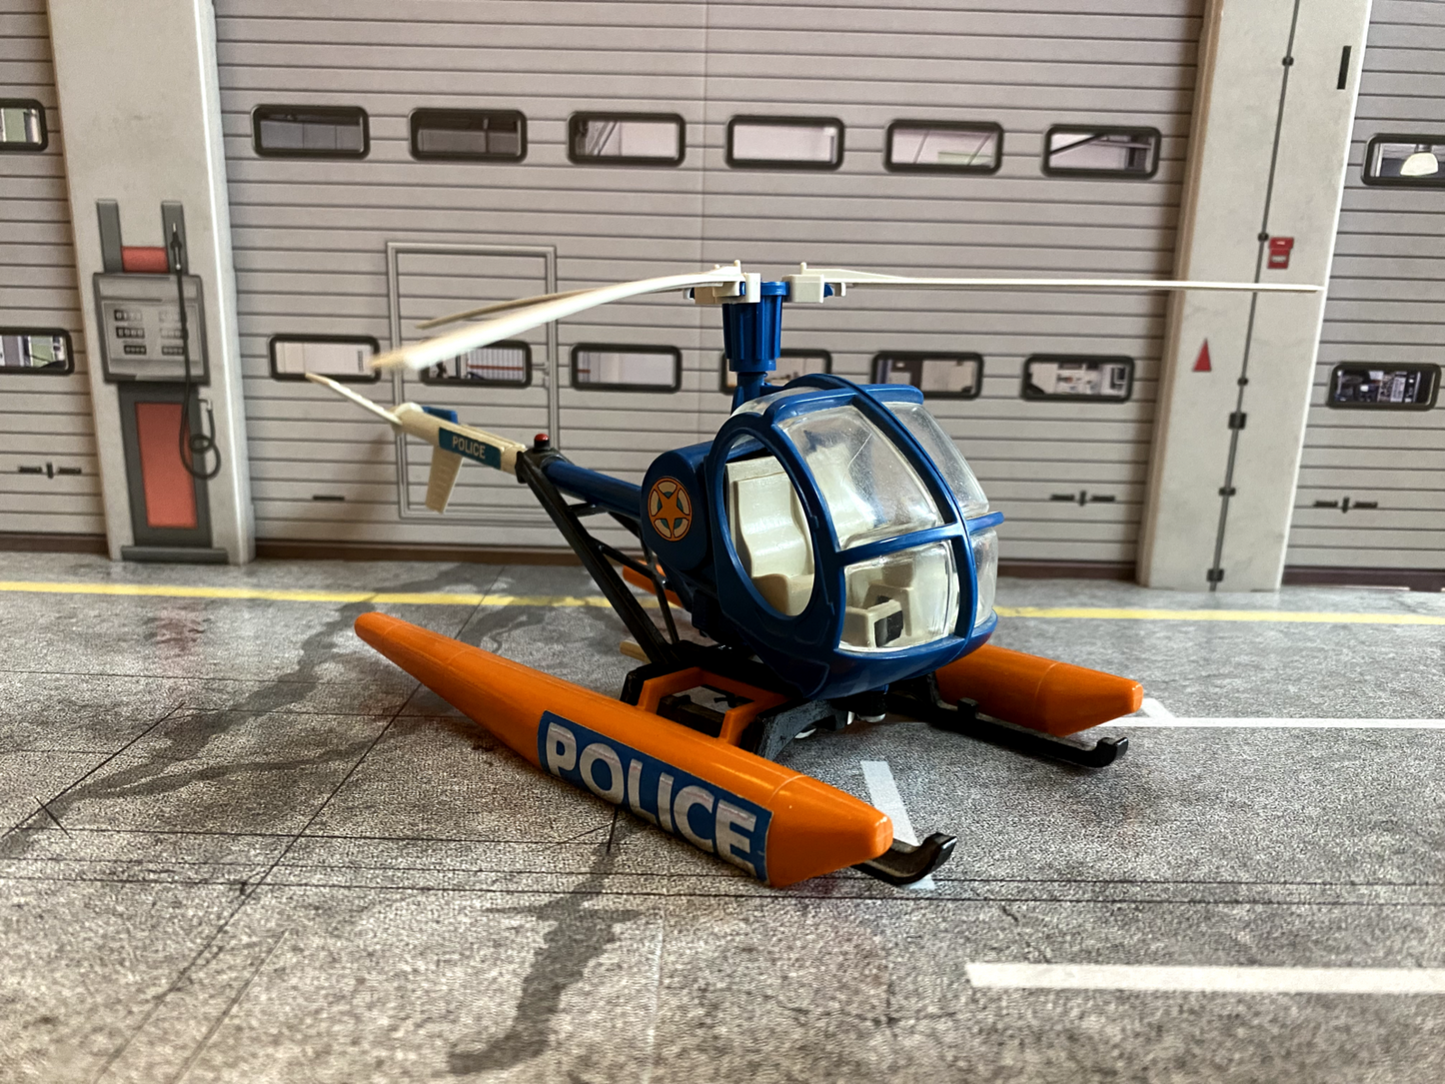 Polizei Hubschrauber Police Helicopter Hughes 300C Britains vintage 1:32